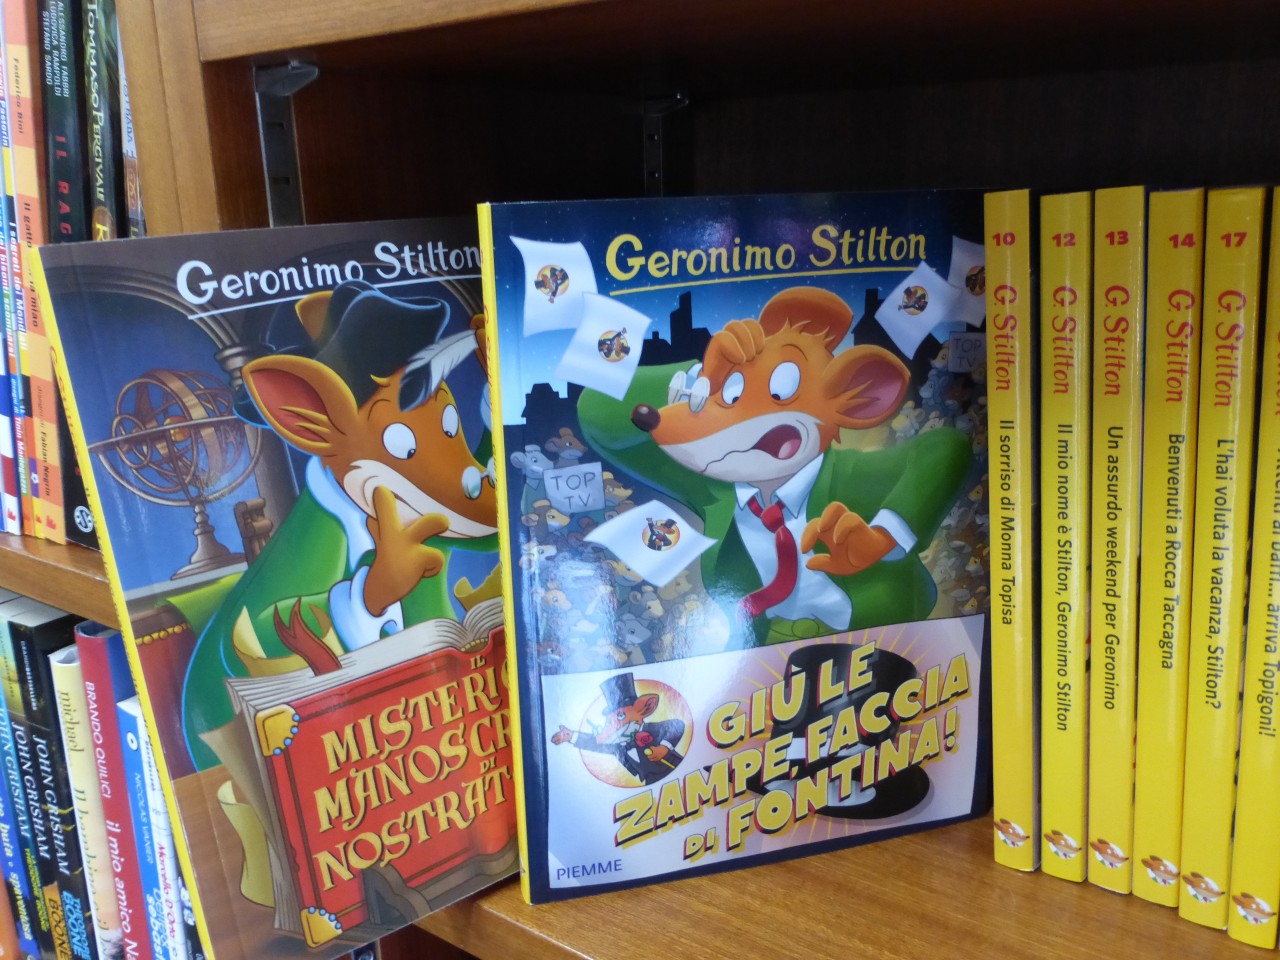 Geronimo Stilton sfida le “50 sfumature” I libri più amati dell'estate